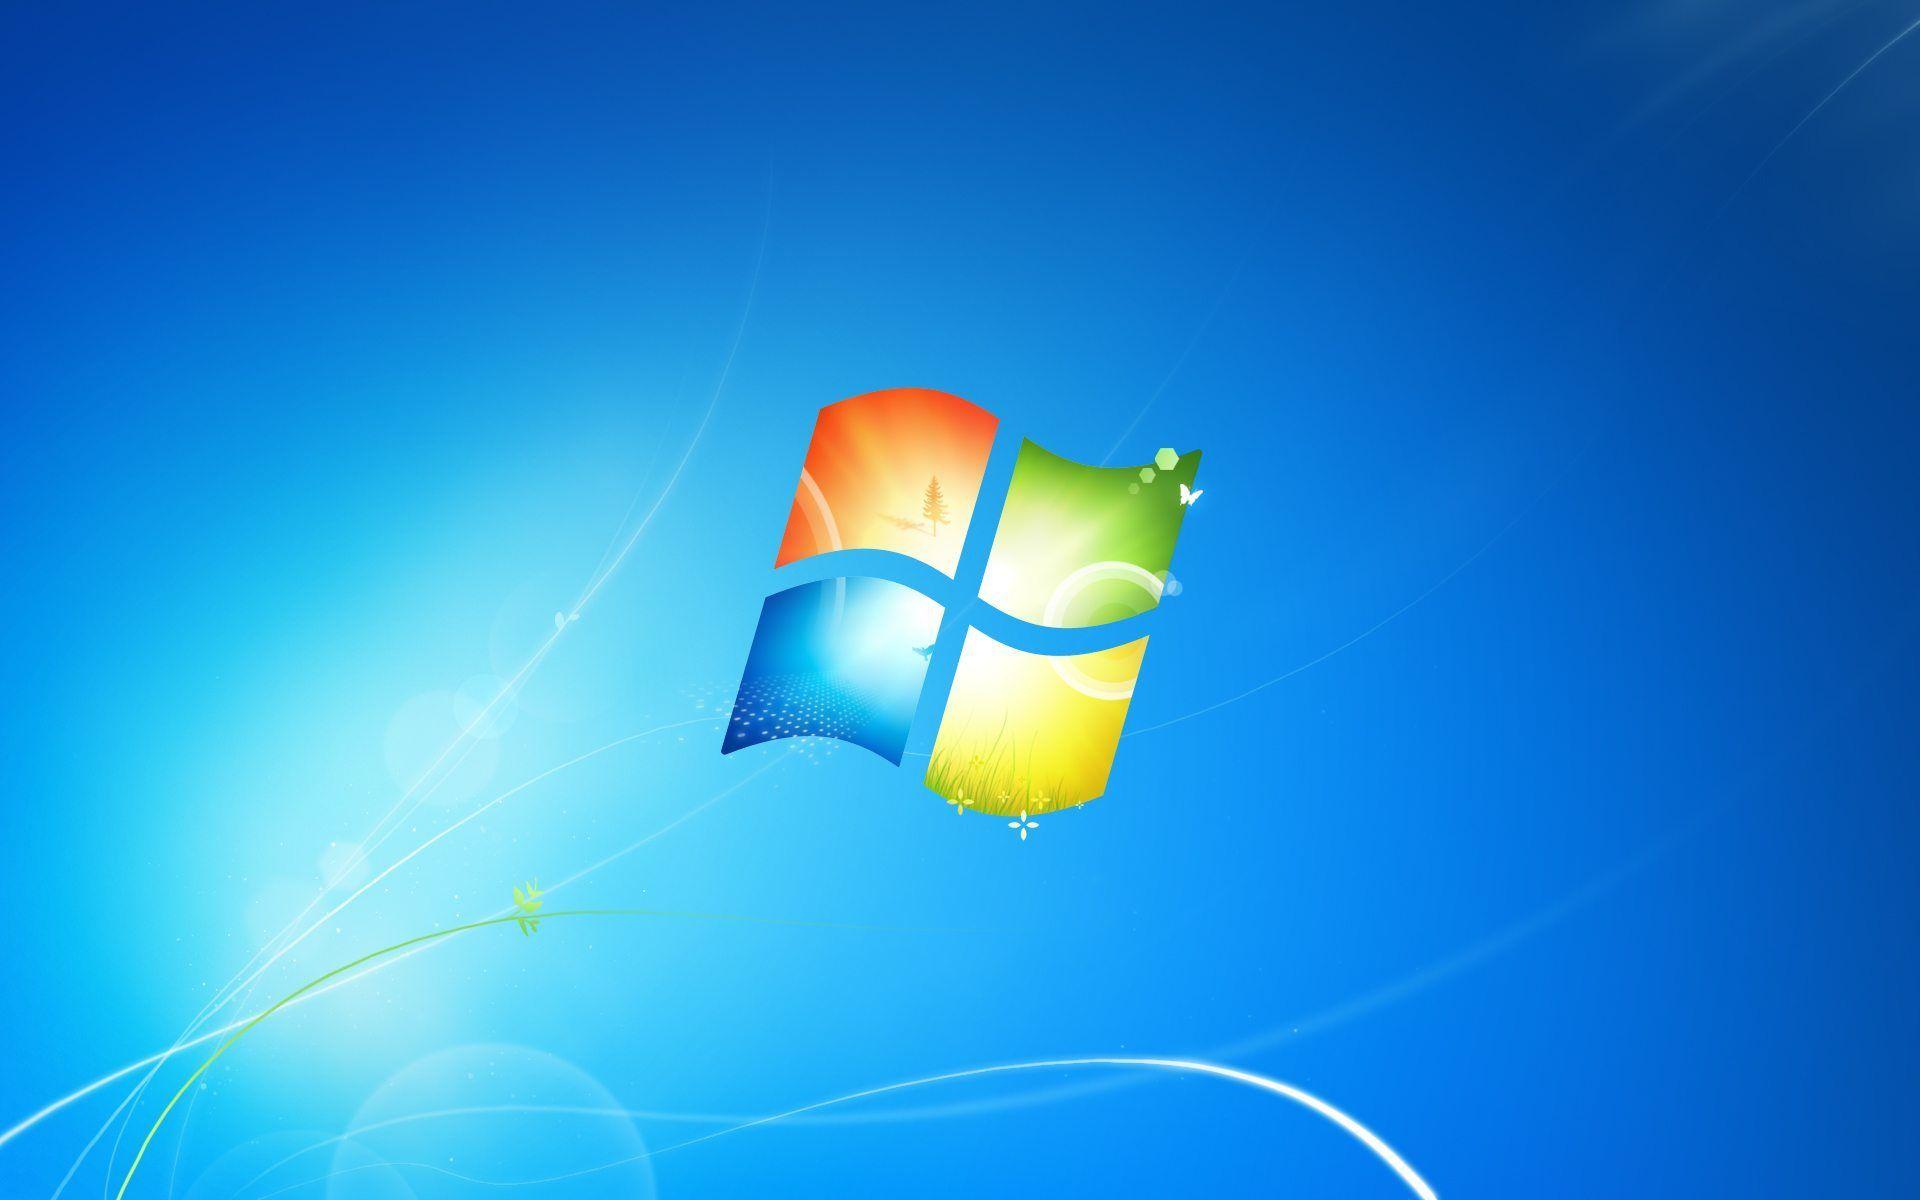 Nếu bạn muốn thay đổi không gian làm việc của mình, Hình nền Windows 7 chắc chắn là lựa chọn tuyệt vời cho bạn. Hãy đắm chìm trong thiết kế đẹp mắt và độc đáo này nhé.